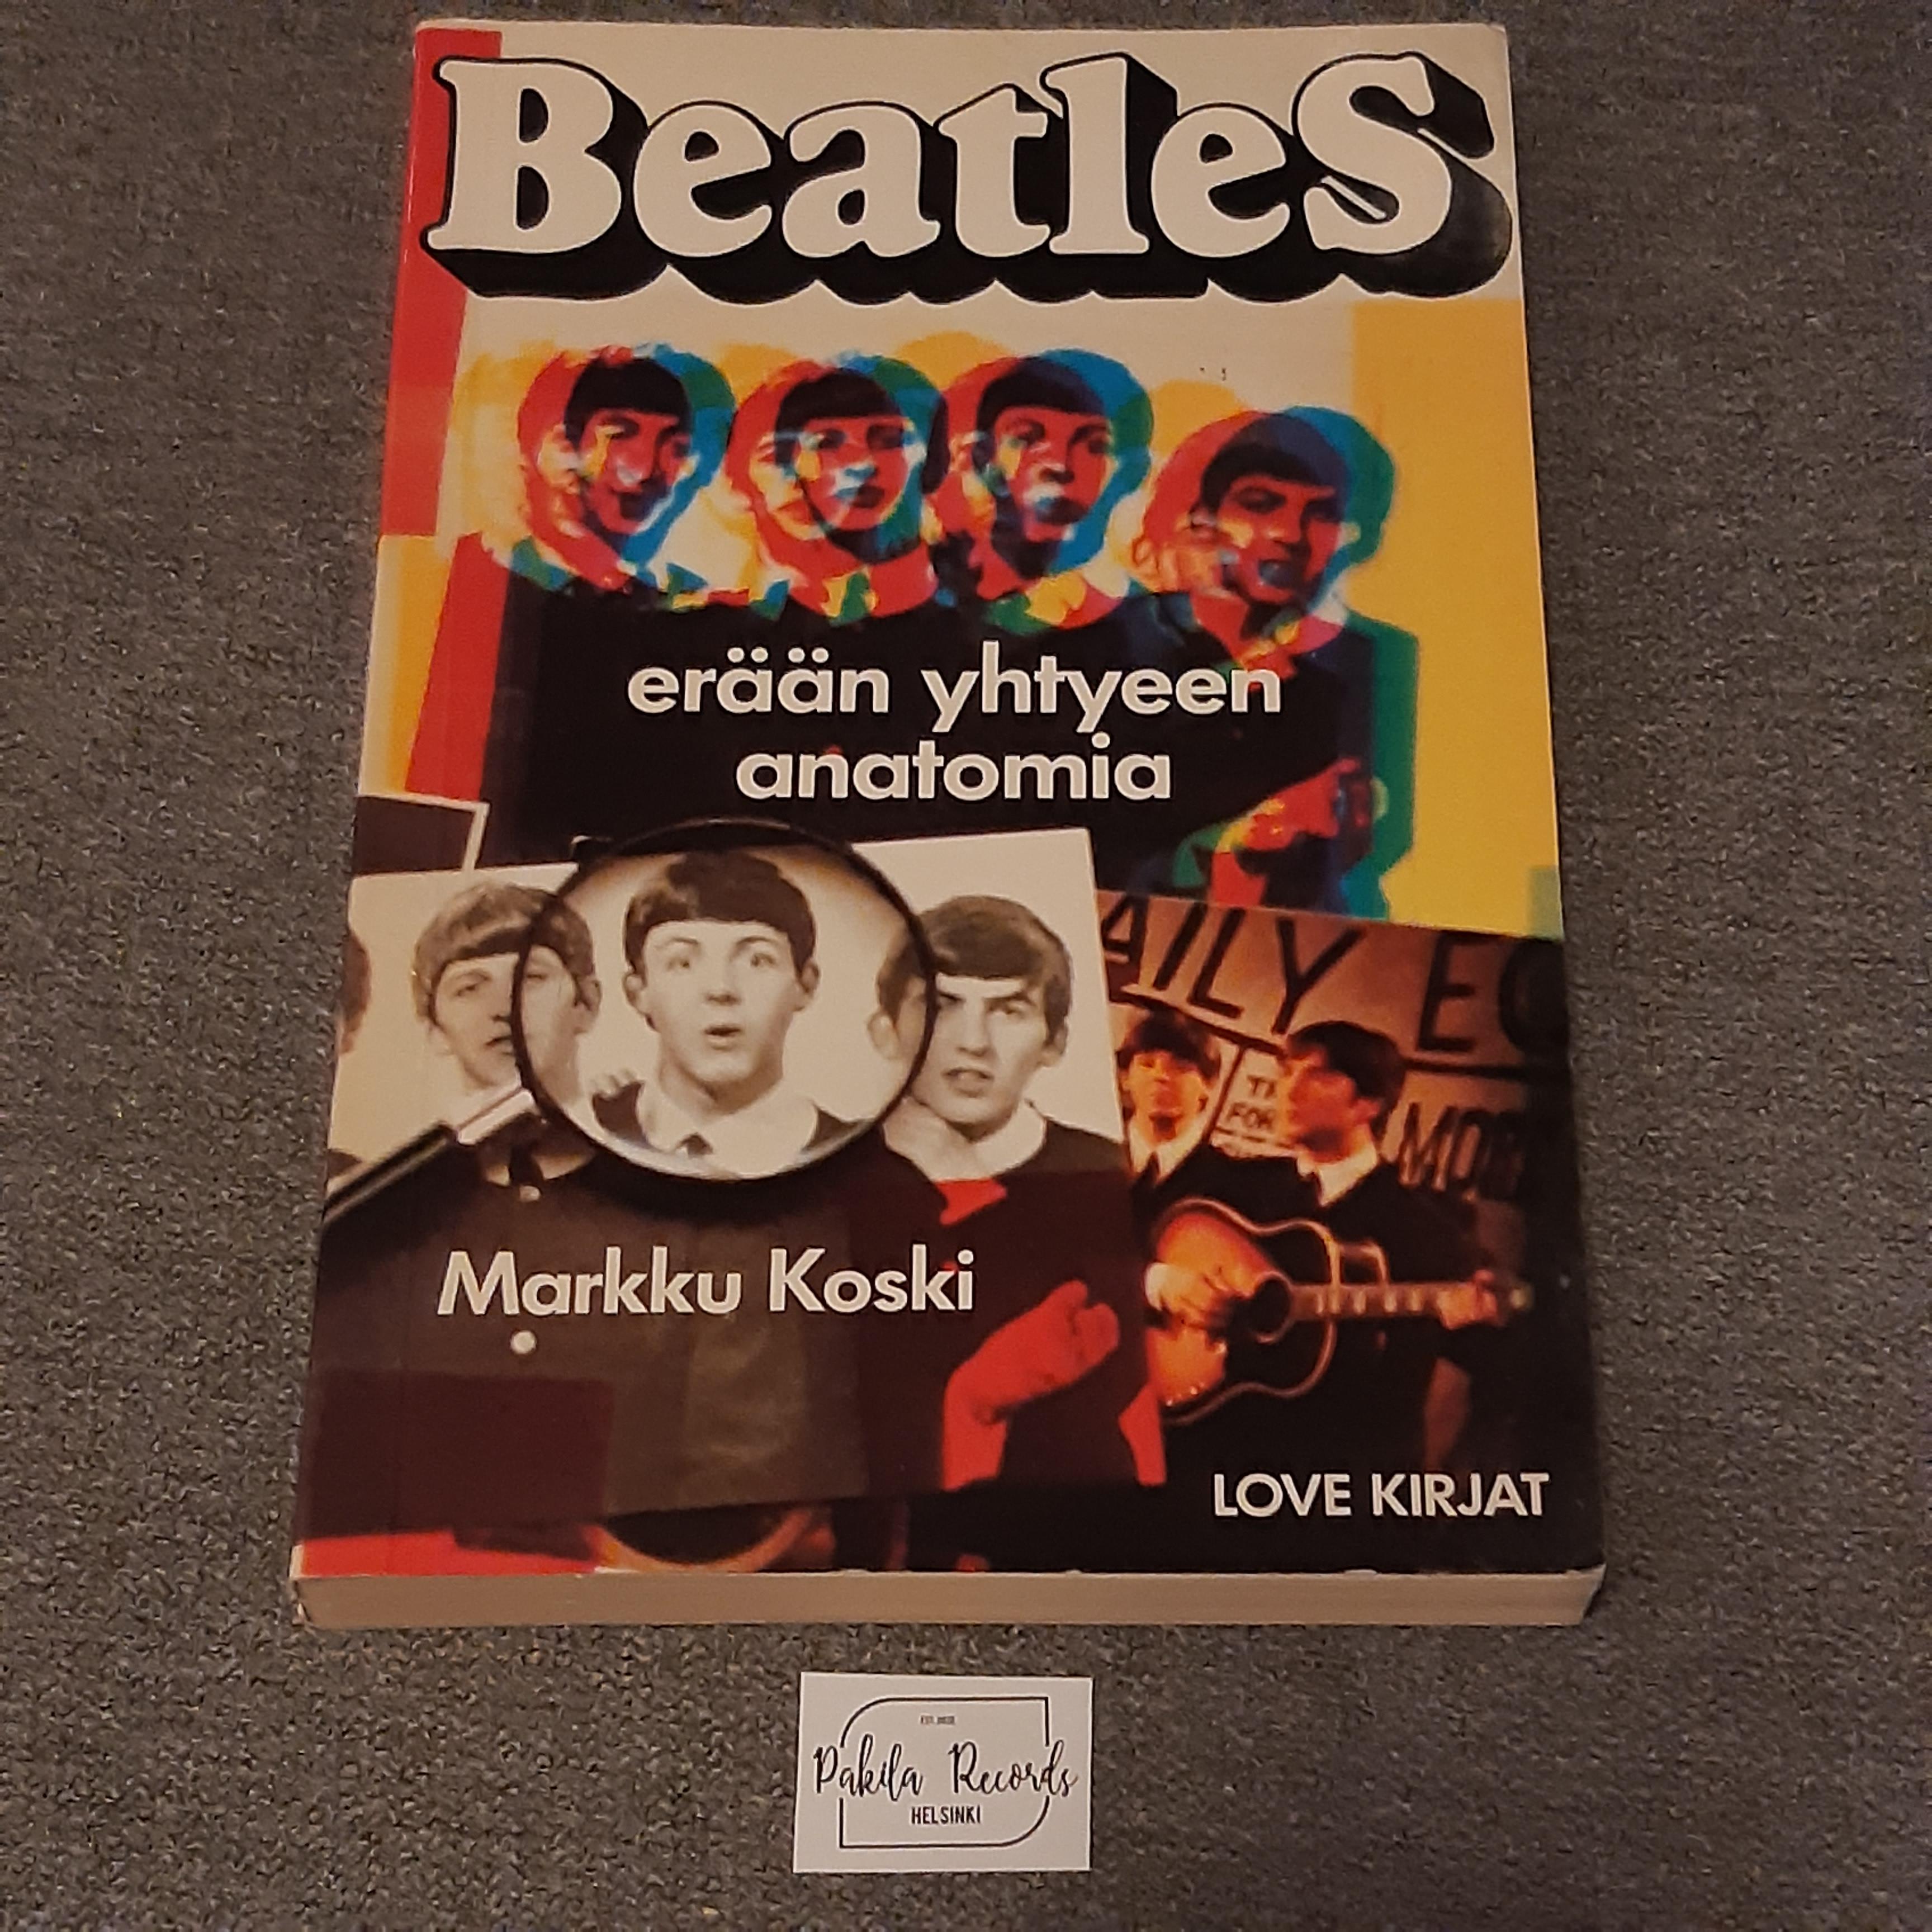 Beatles, Erään yhtyeen anatomia - Markku Koski - Kirja (käytetty)